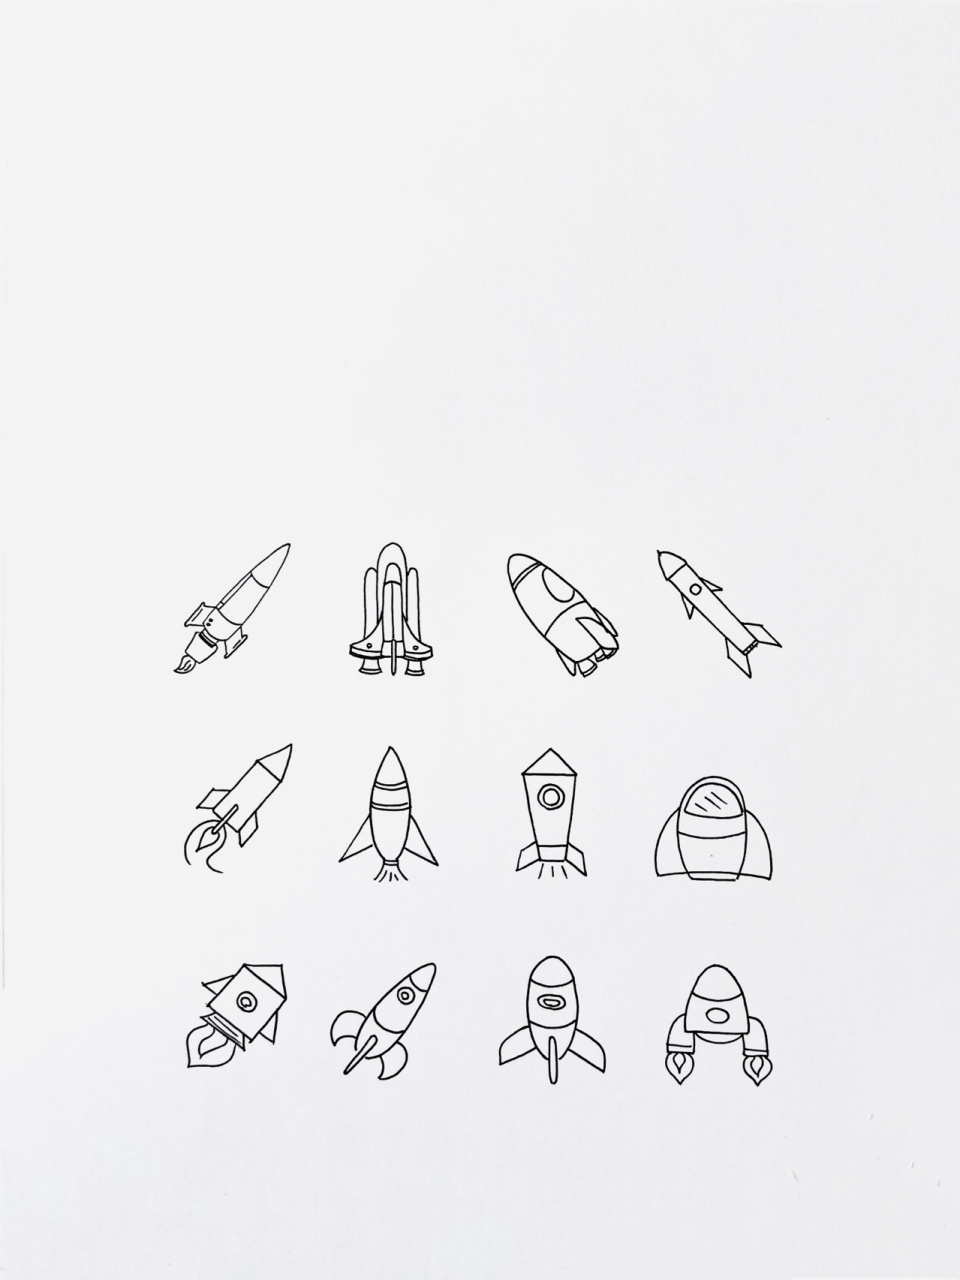 【简笔画】火箭04 分享一组火箭简笔画超级简单的,还喜欢什么大家